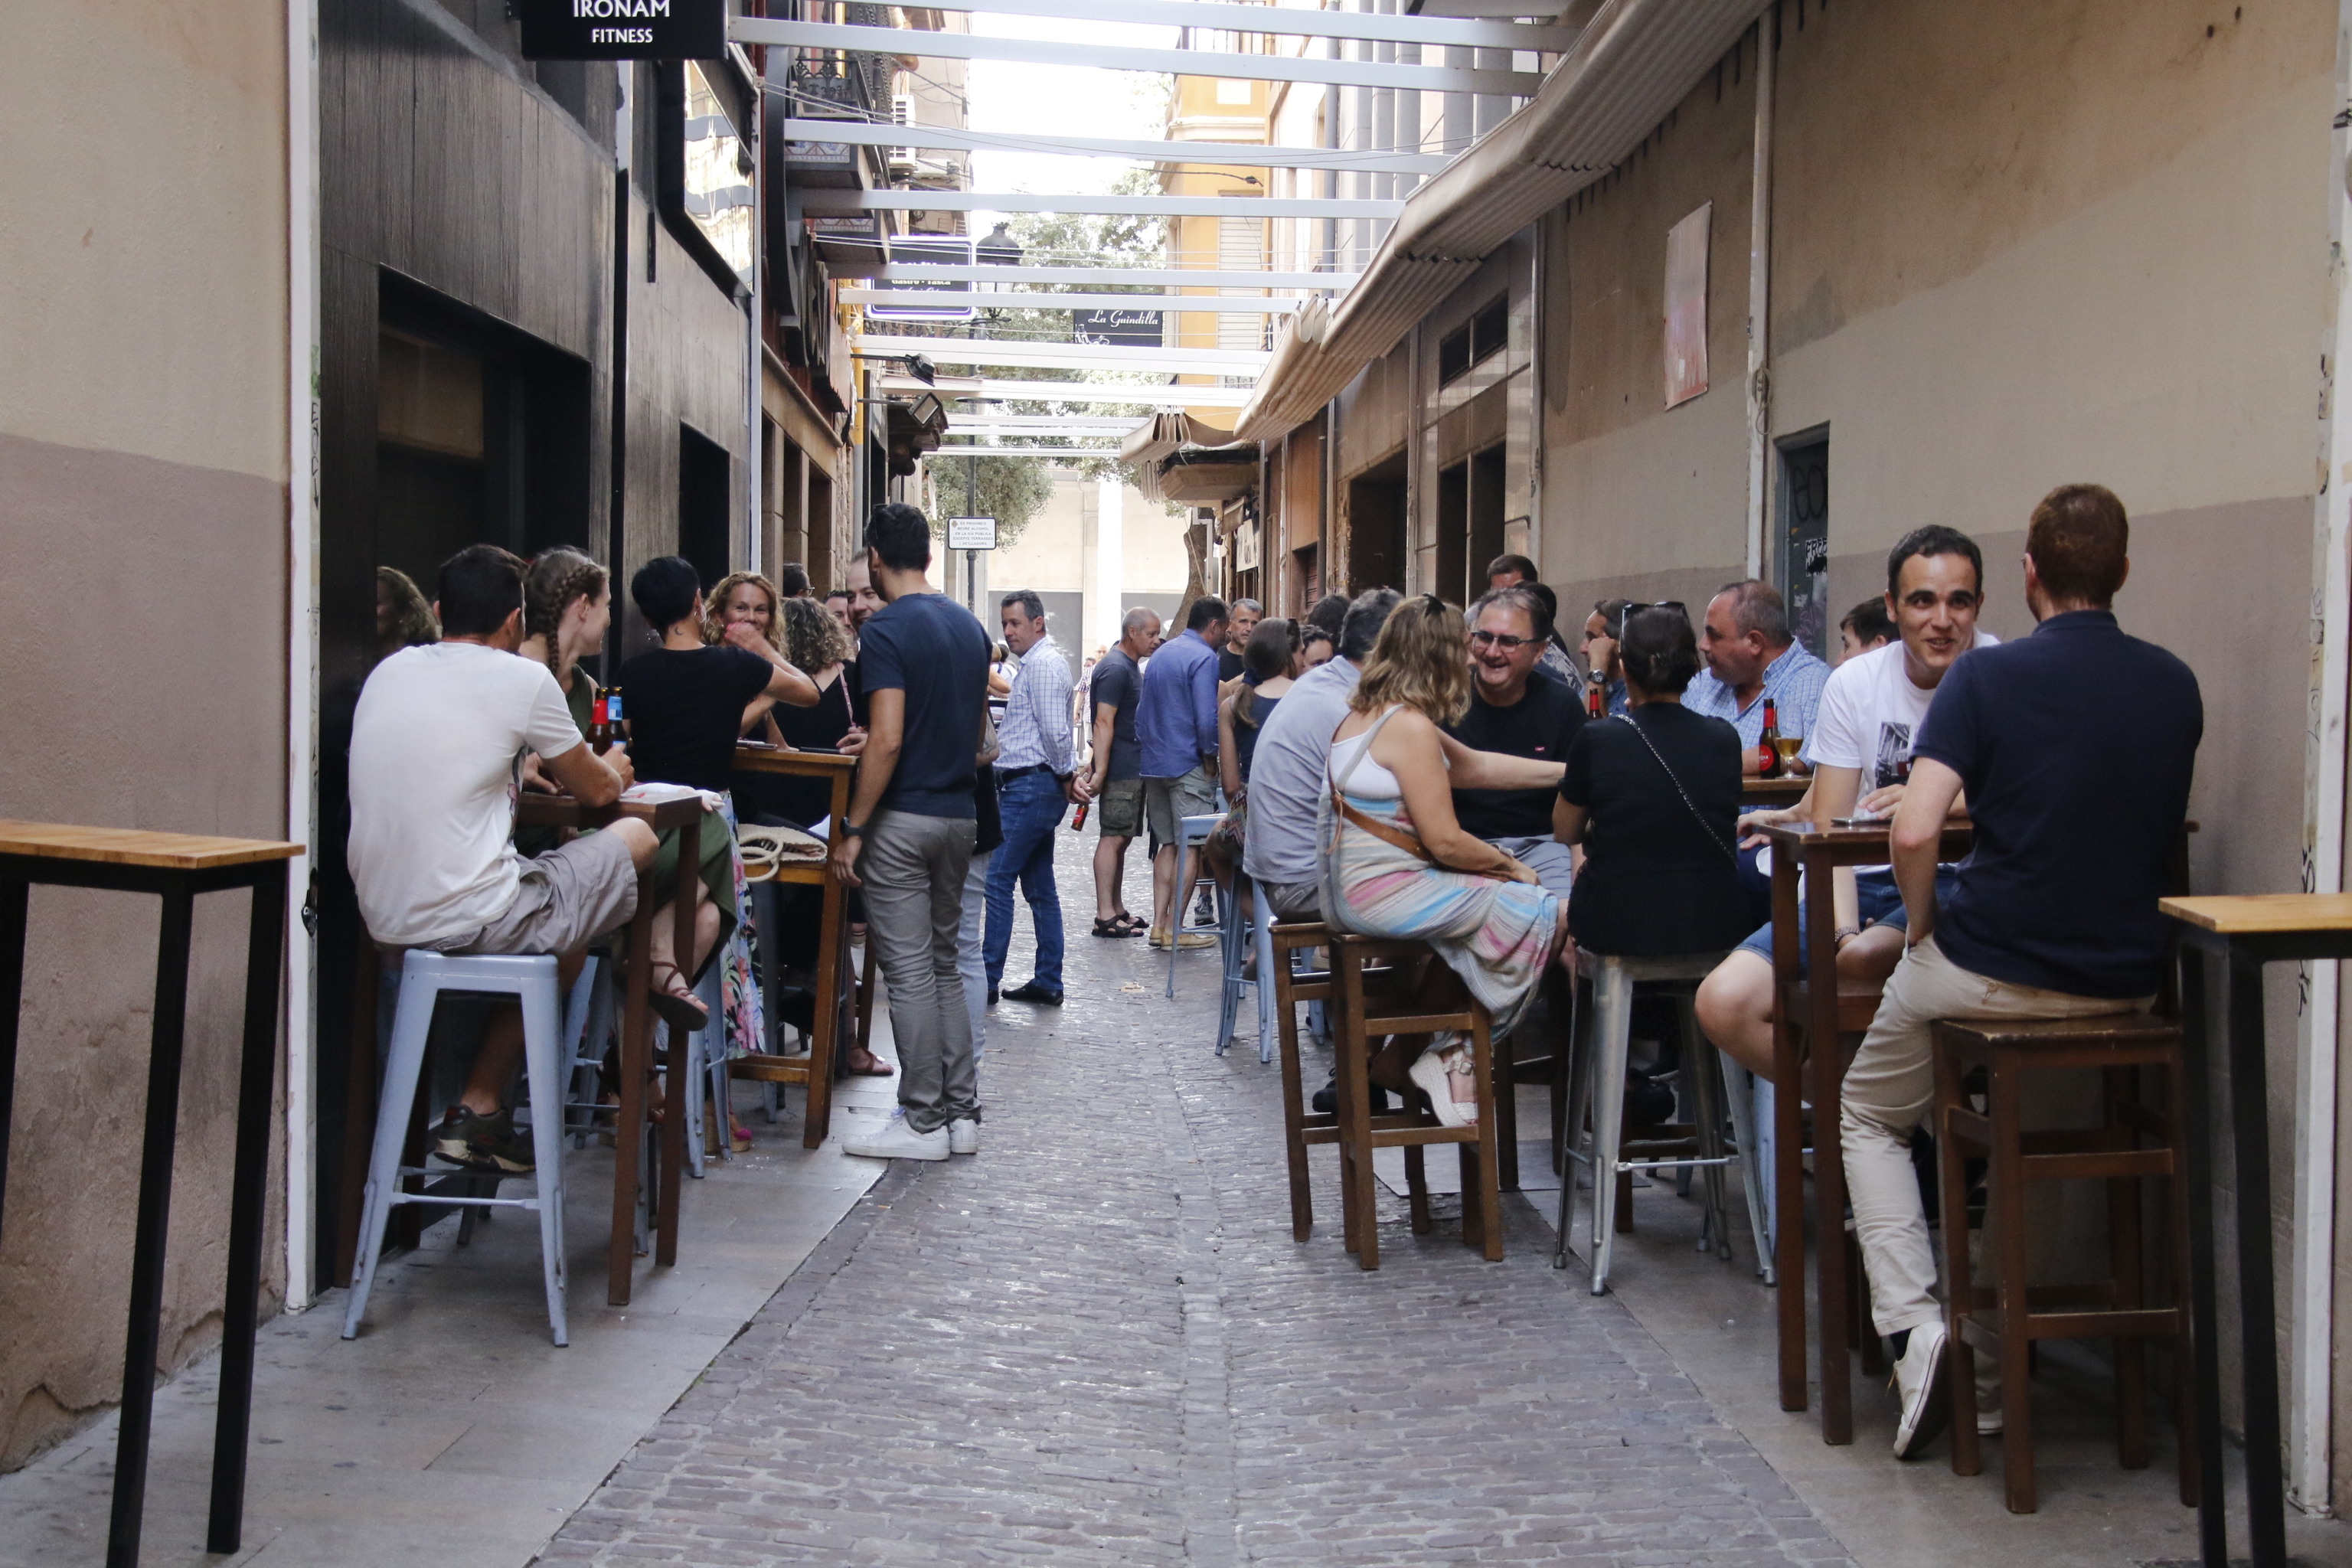 Varios grupos de personas consumen en la zona conocida como 'Tascas' en el centro de la ciudad de Castelln.